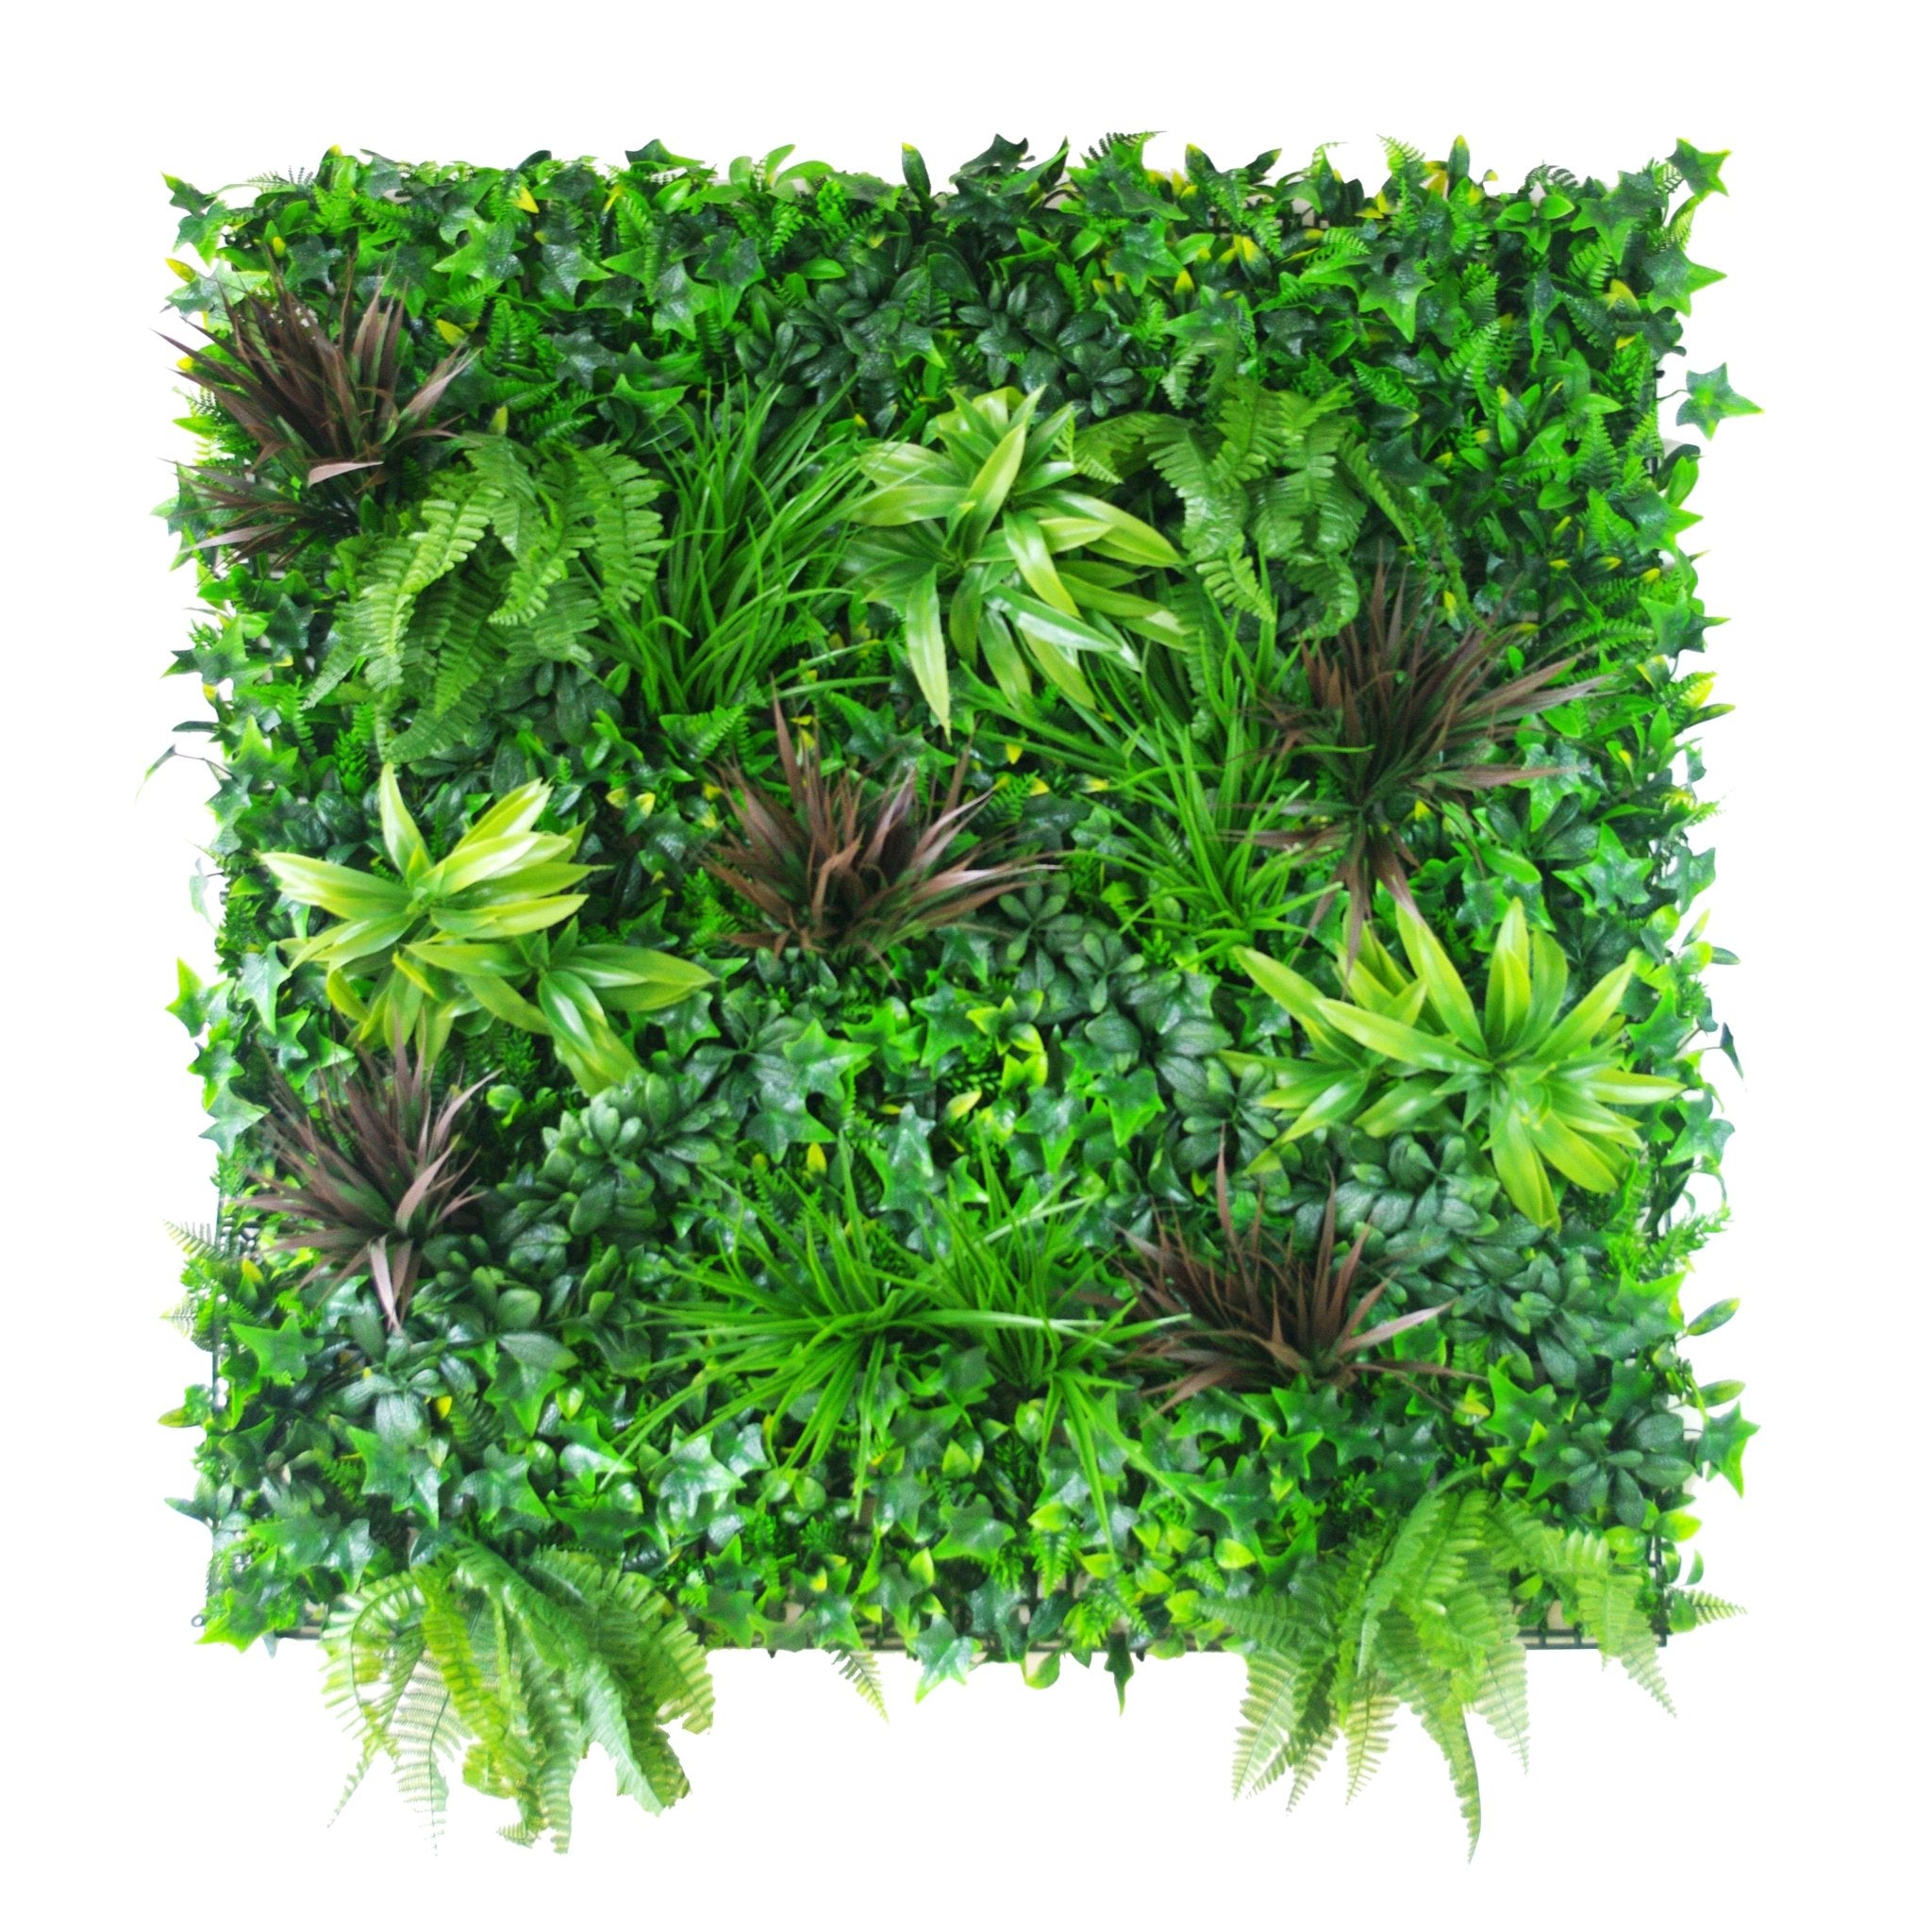 Sample - UV Green Beet Artificial Vertical Garden (25cm x 25cm) - Designer Vertical Gardens artificial garden wall plants artificial green wall australia